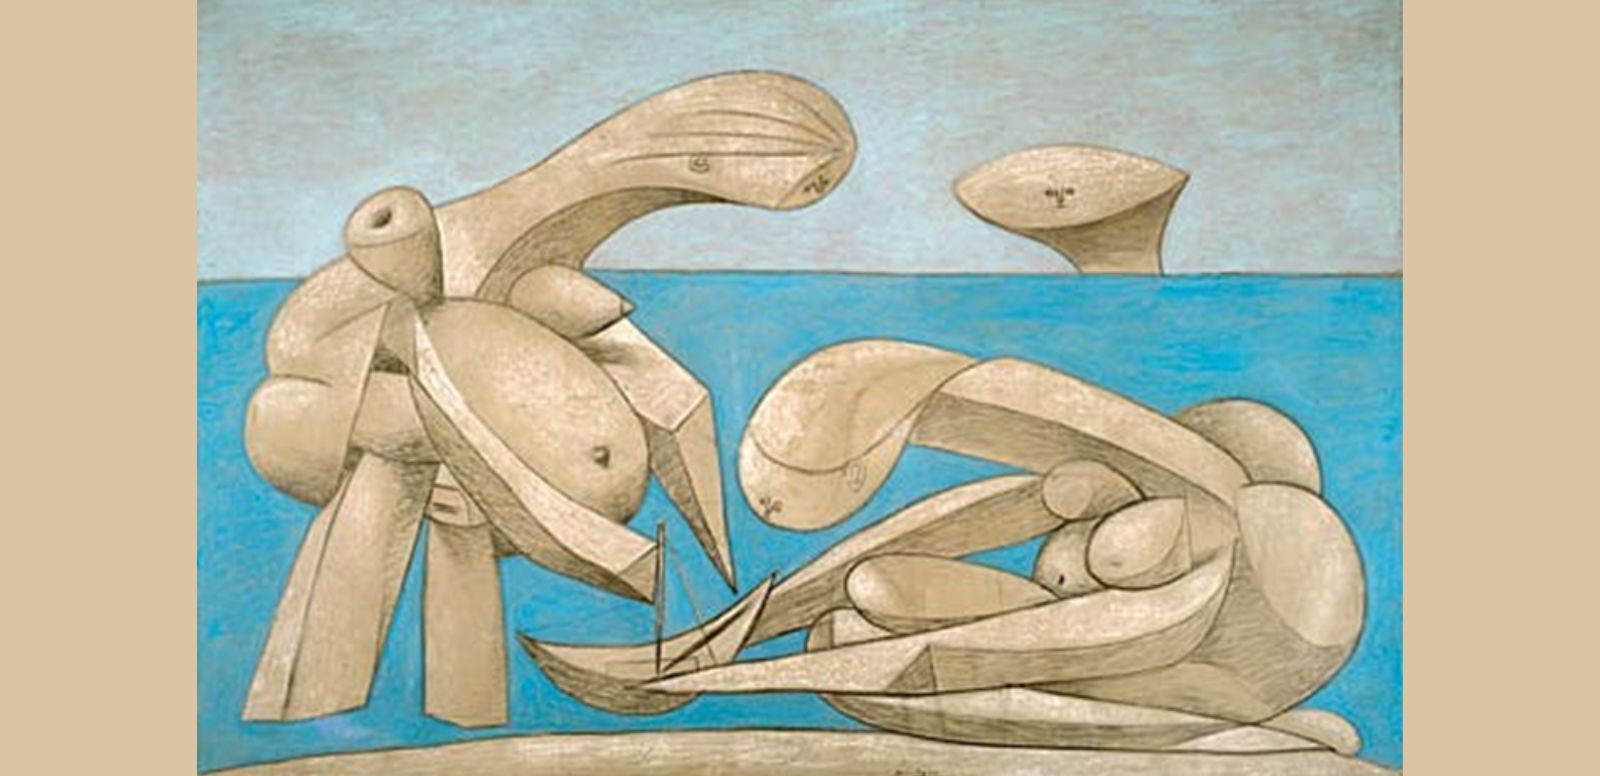 Pablo Picasso “Mujeres jugando en la playa” 1937